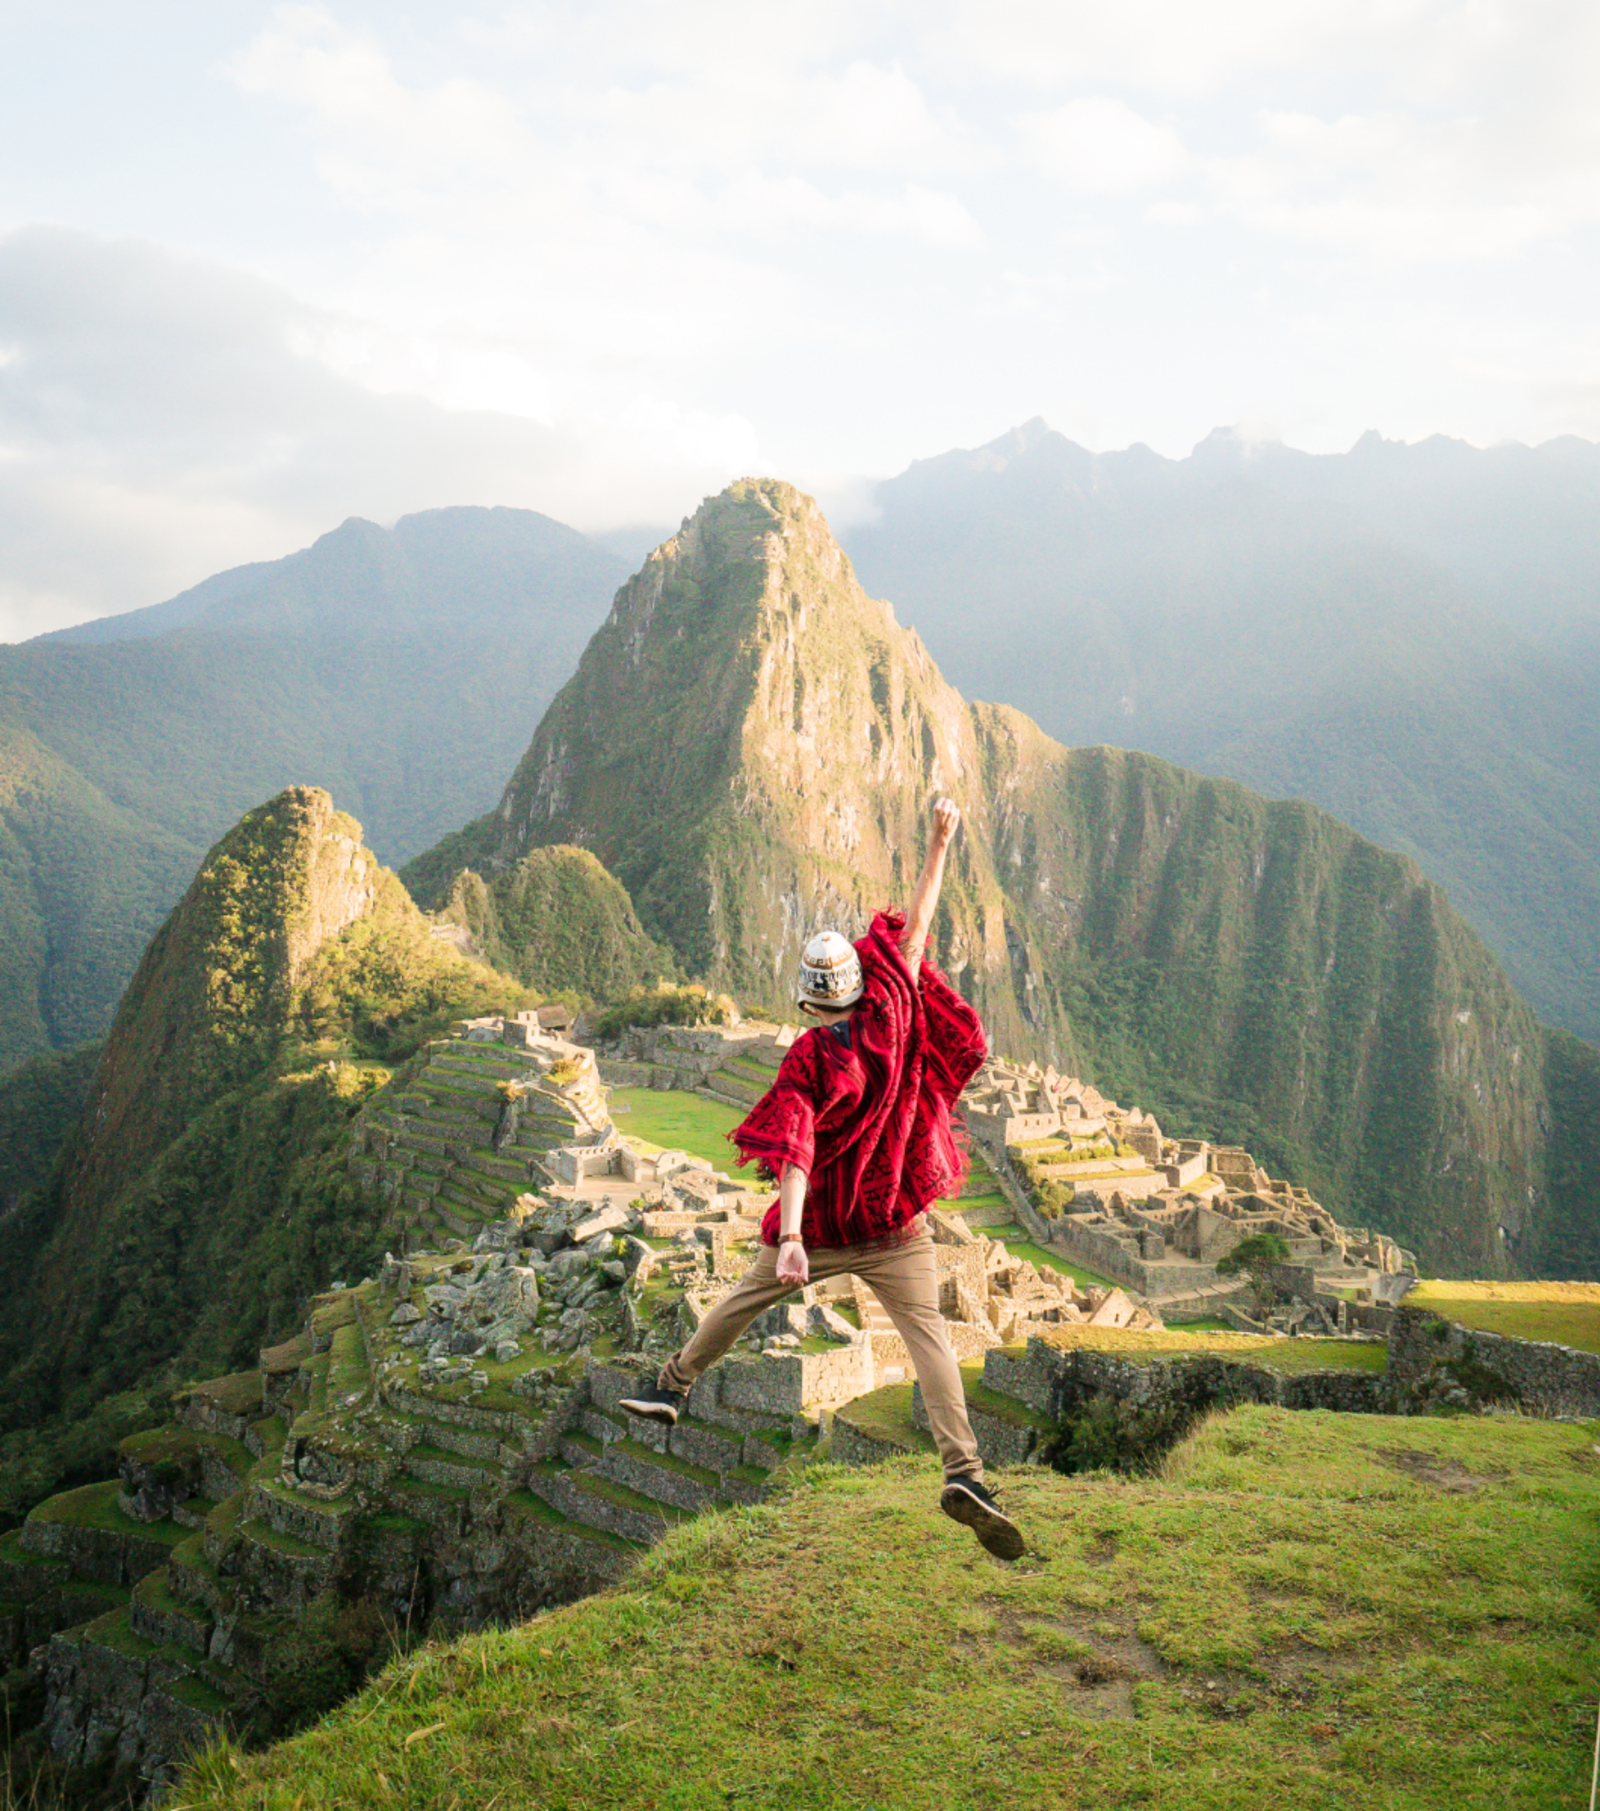 Machu Picchu is a must-visit ancient wonder in Peru